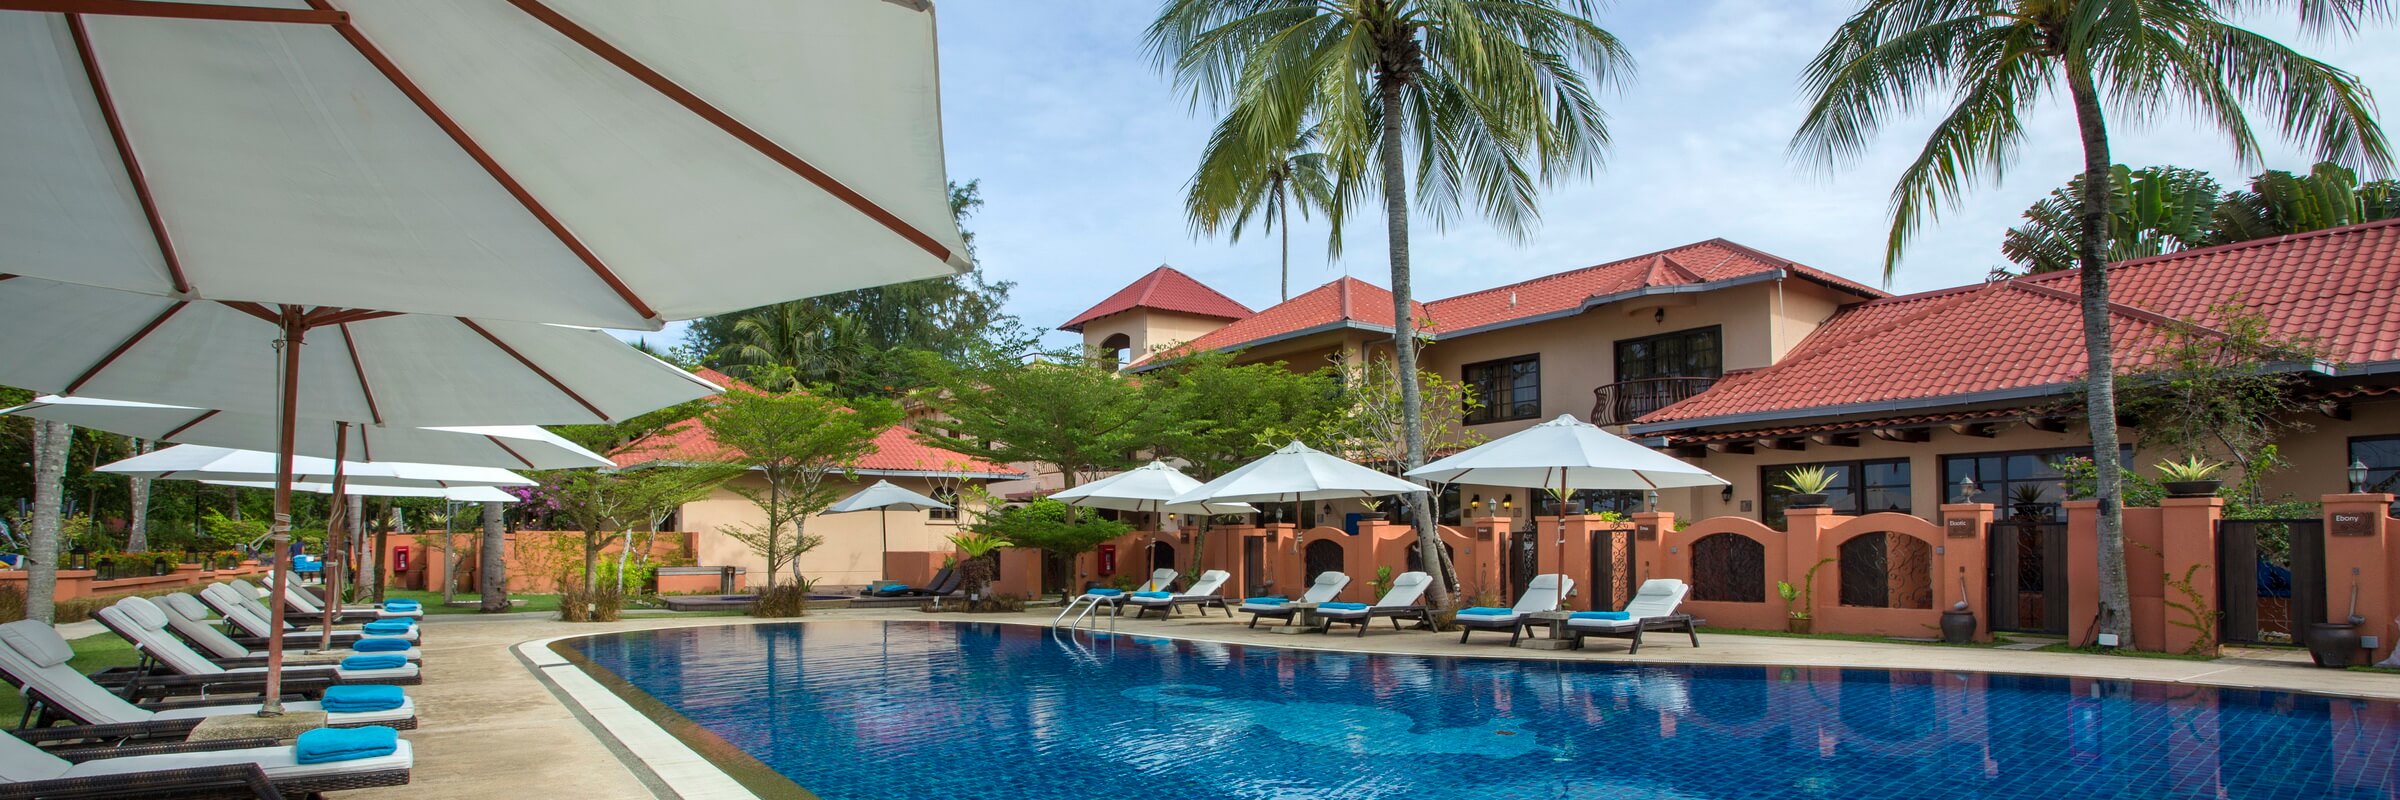 Stilvolle Poollandschaft mit Sonnenterasse des Casa del Mar Boutique-Hotel in Malaysia